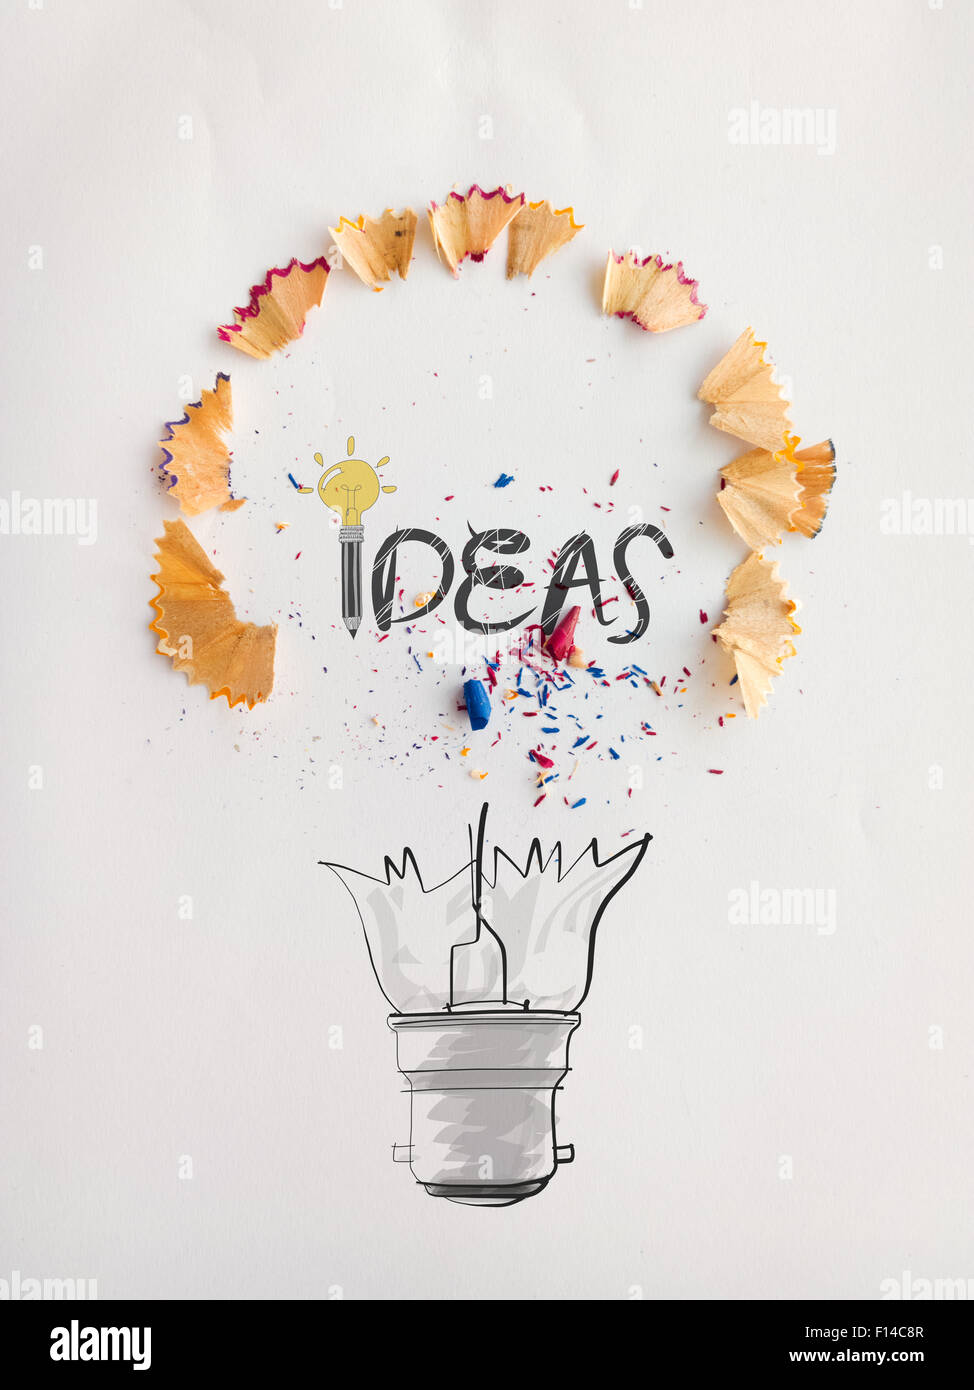 Disegnato a mano lampadina luce word design idea con la matita di segatura di legno su sfondo della carta come concetto creativo Foto Stock